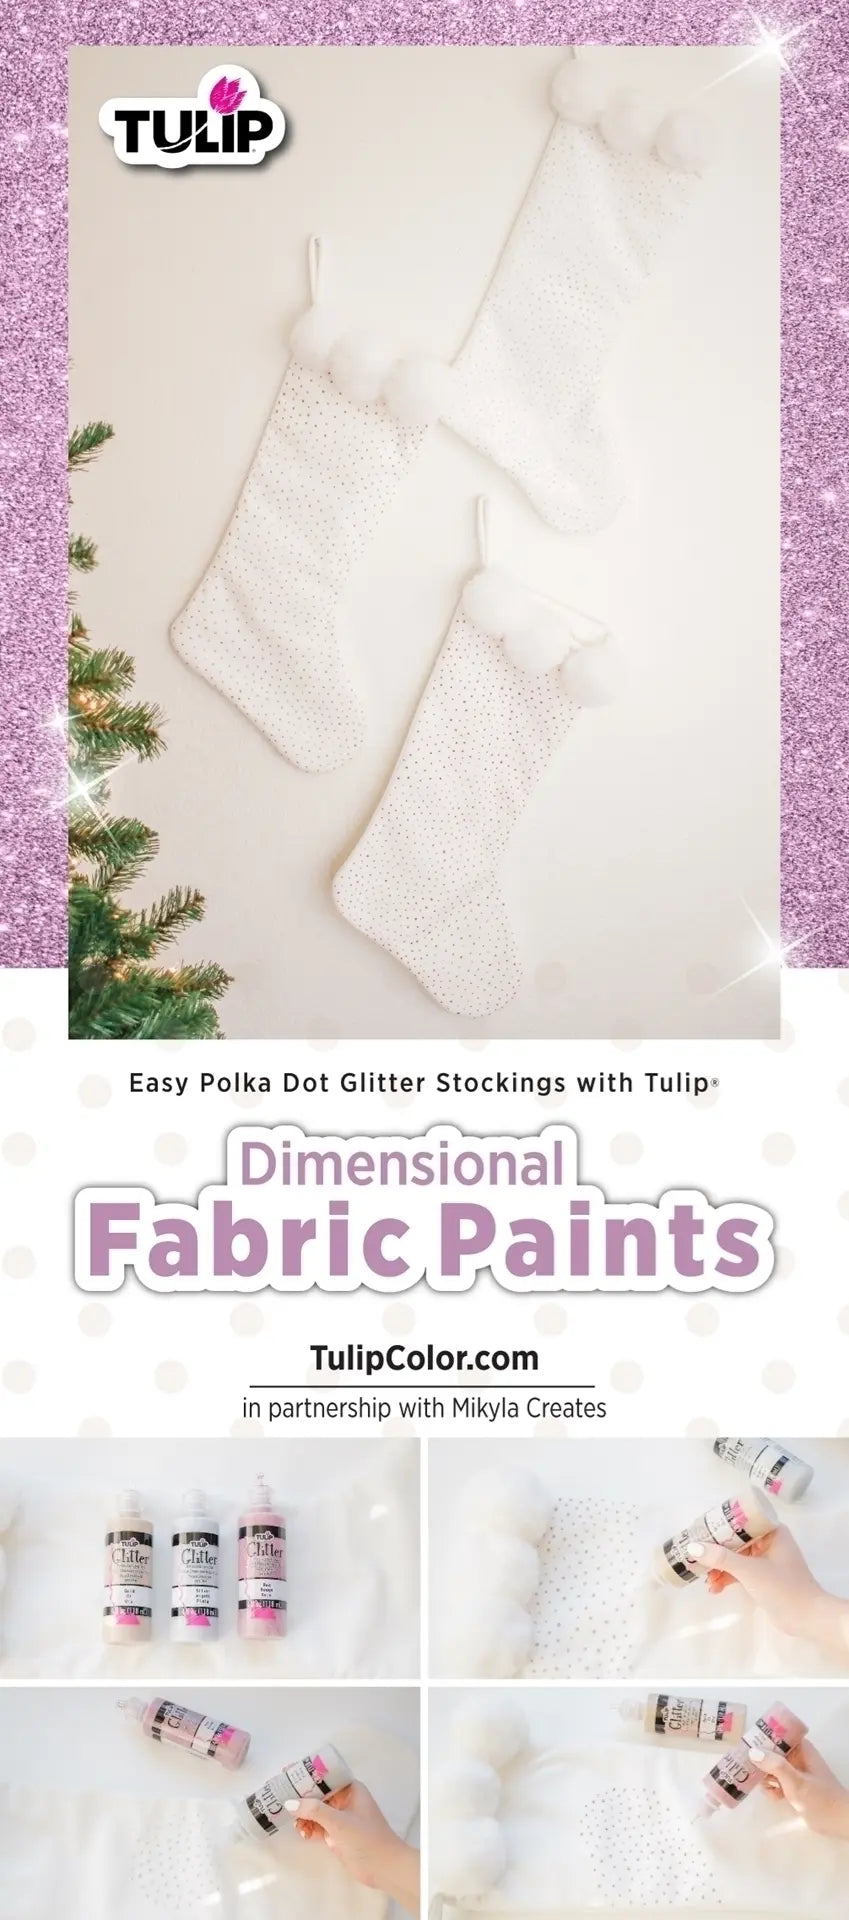 5 PC Tulip Dazzling Glitter Jewels Fabric Paint